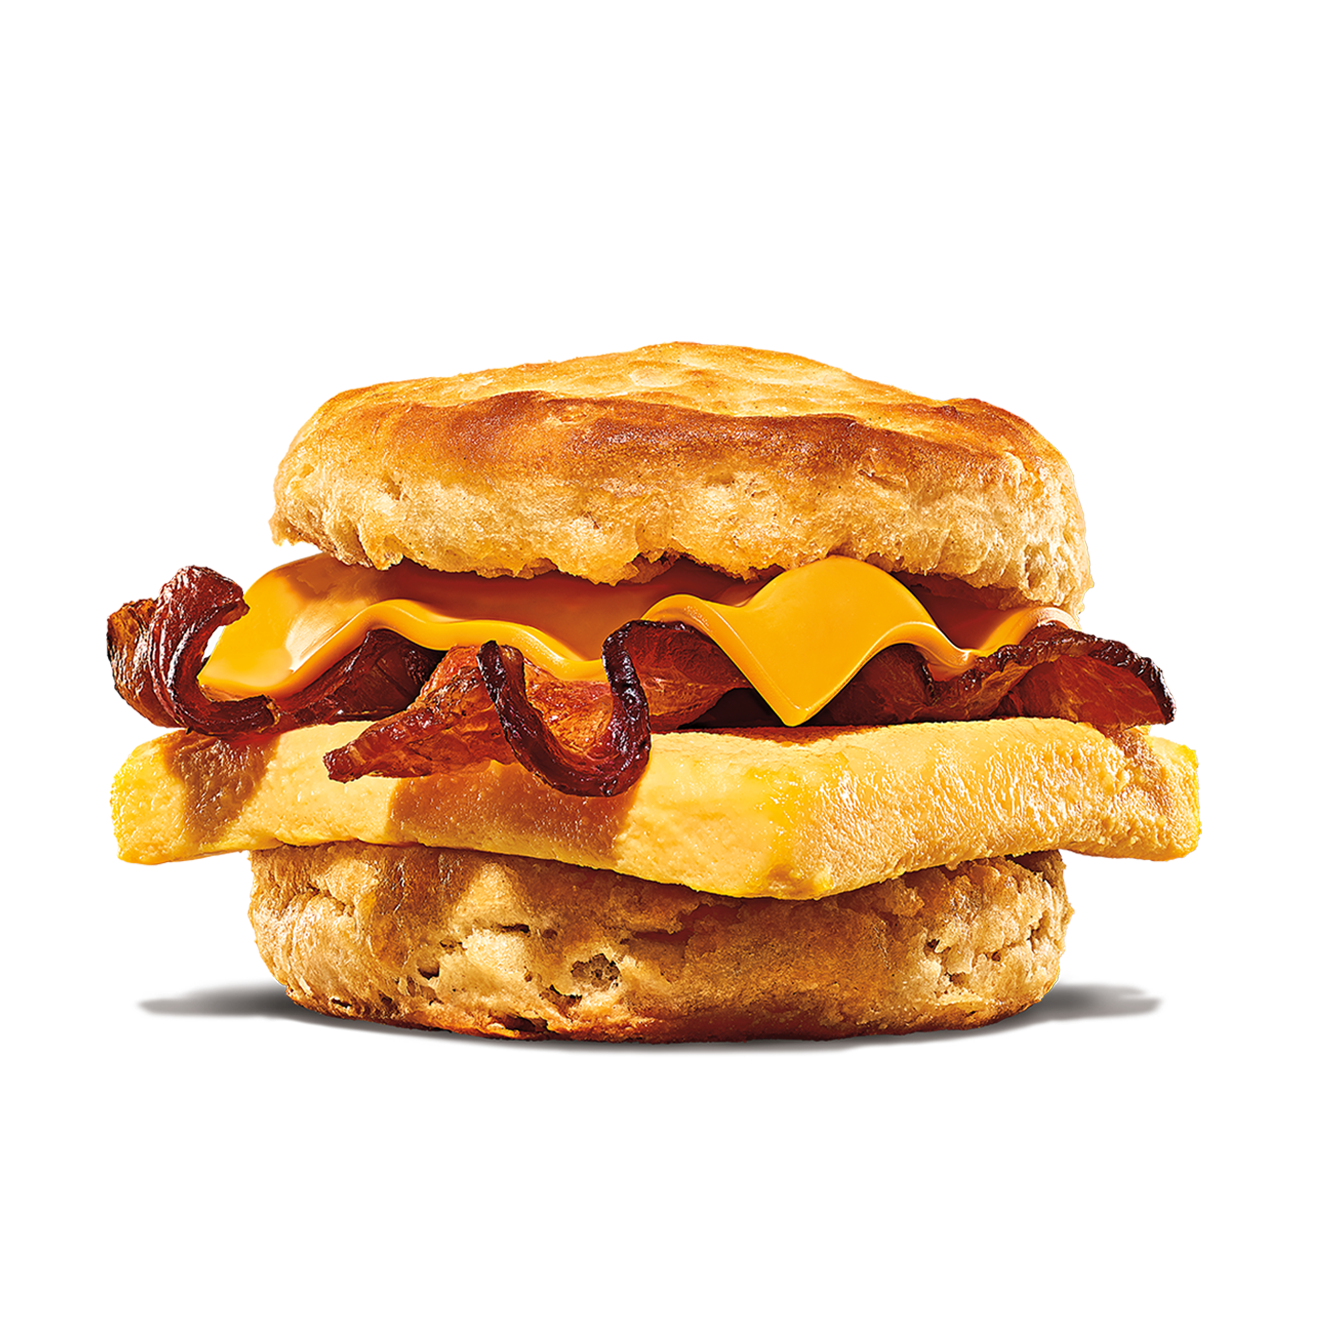 Burger King Fort Collins (970)482-5606